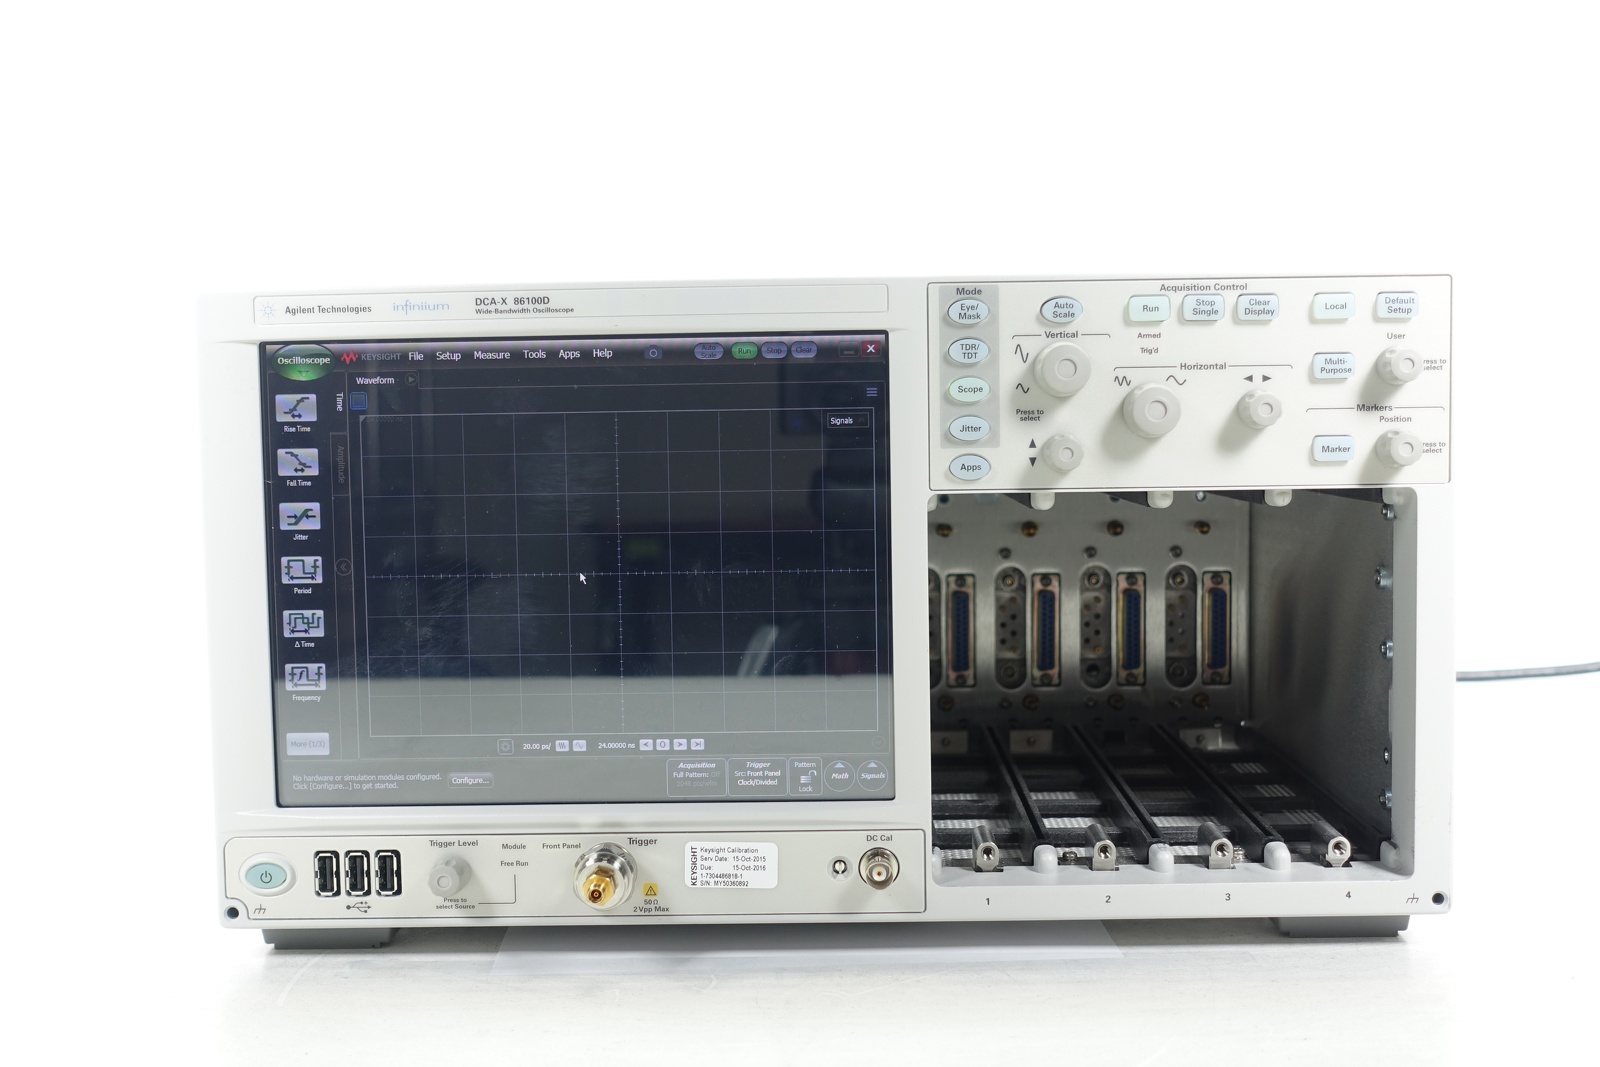 Keysight 86100D Infiniium DCA-X Wide-Bandwidth Oscilloscope Mainframe